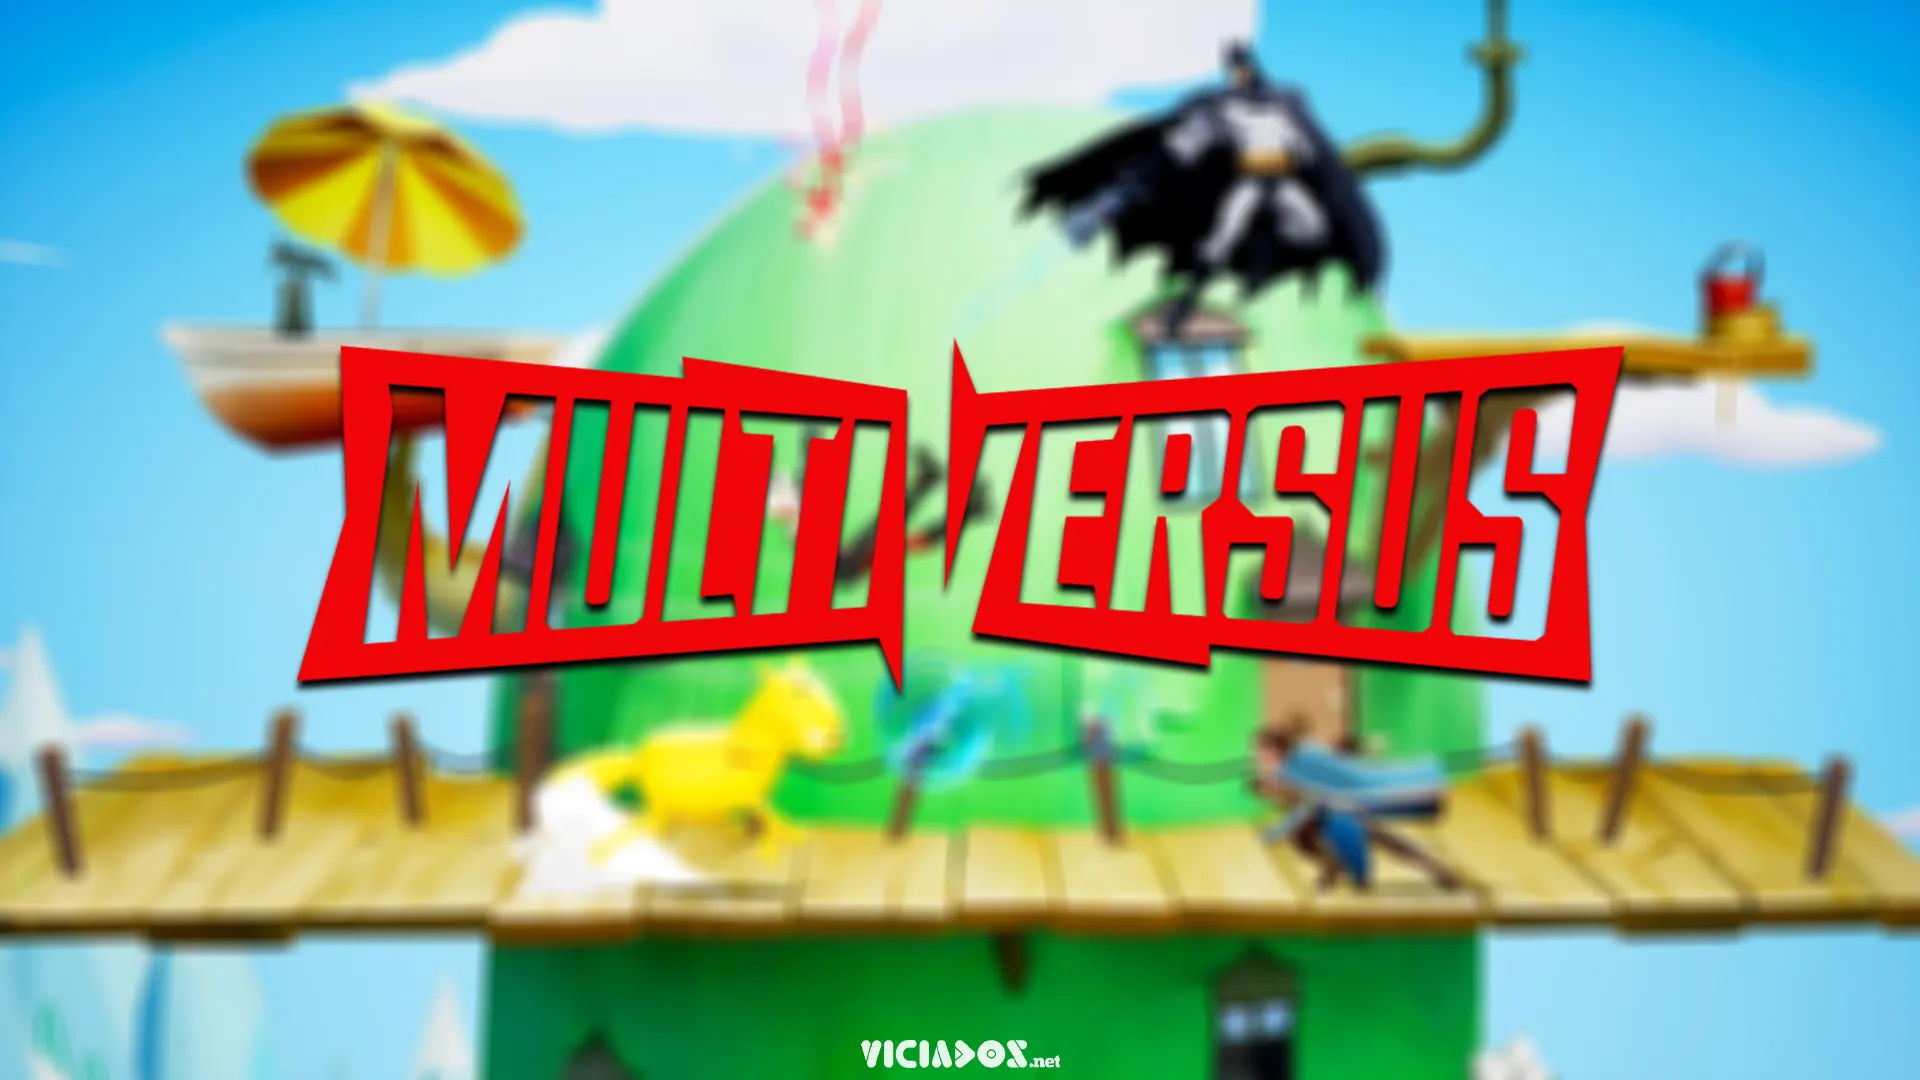 Multiversus | Gameplay do jogo de luta da Warner Bros vaza na internet 2022 Viciados